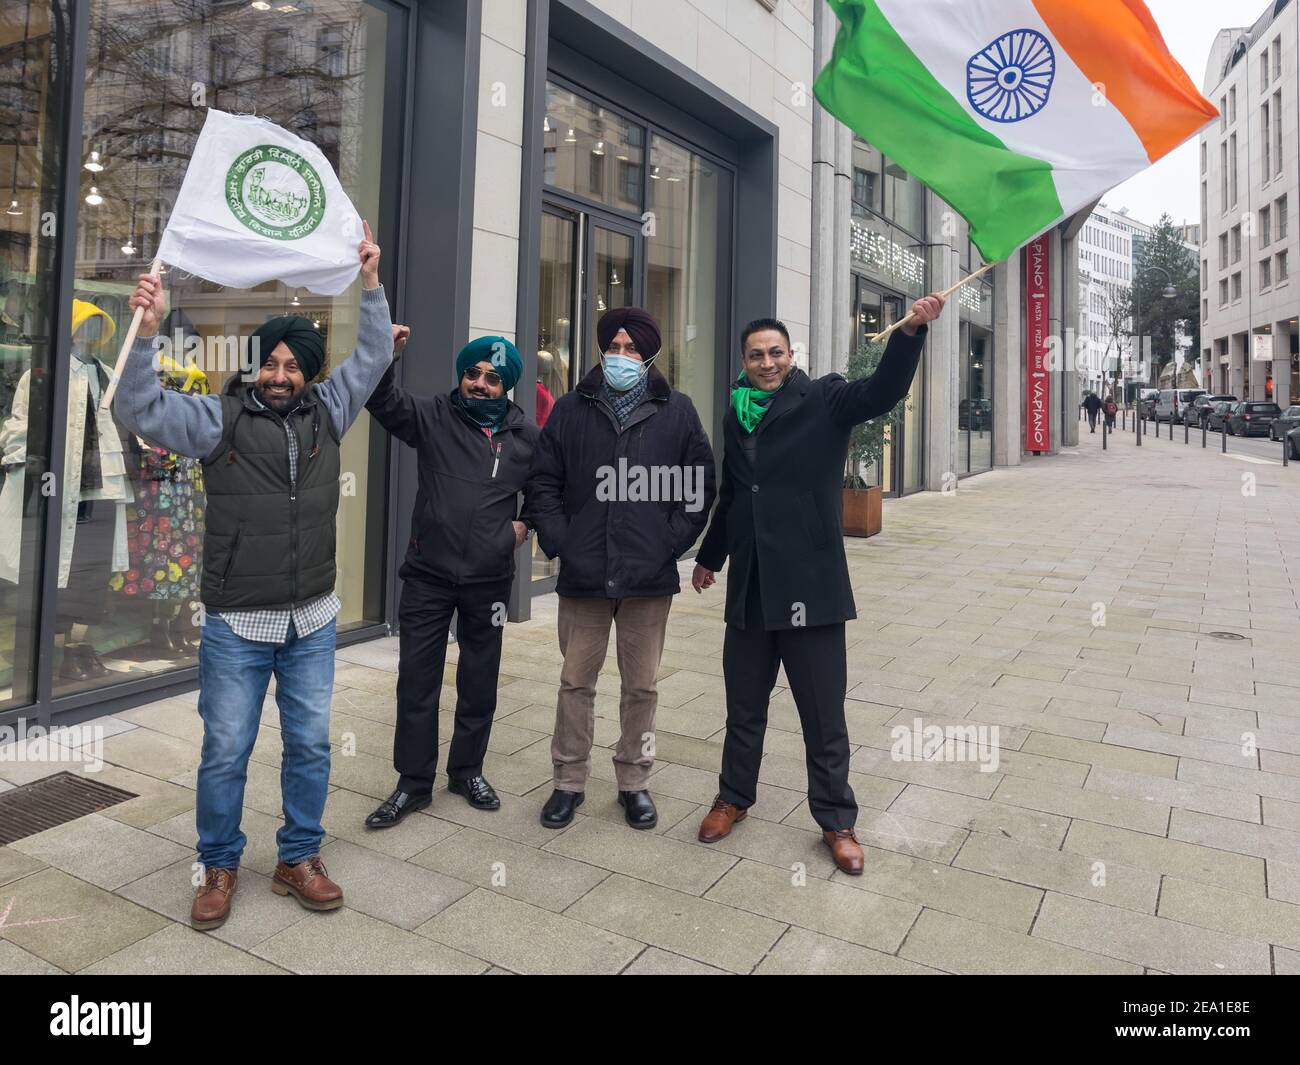 Monty Bhangu, Lovely Bhangu, Hermanos Bhangu, singende Taxifahrer, Youtube, R. S. Bajwa, indiscarente Wirt Chani, Unterstützung der Proteste indiscarcher Foto de stock